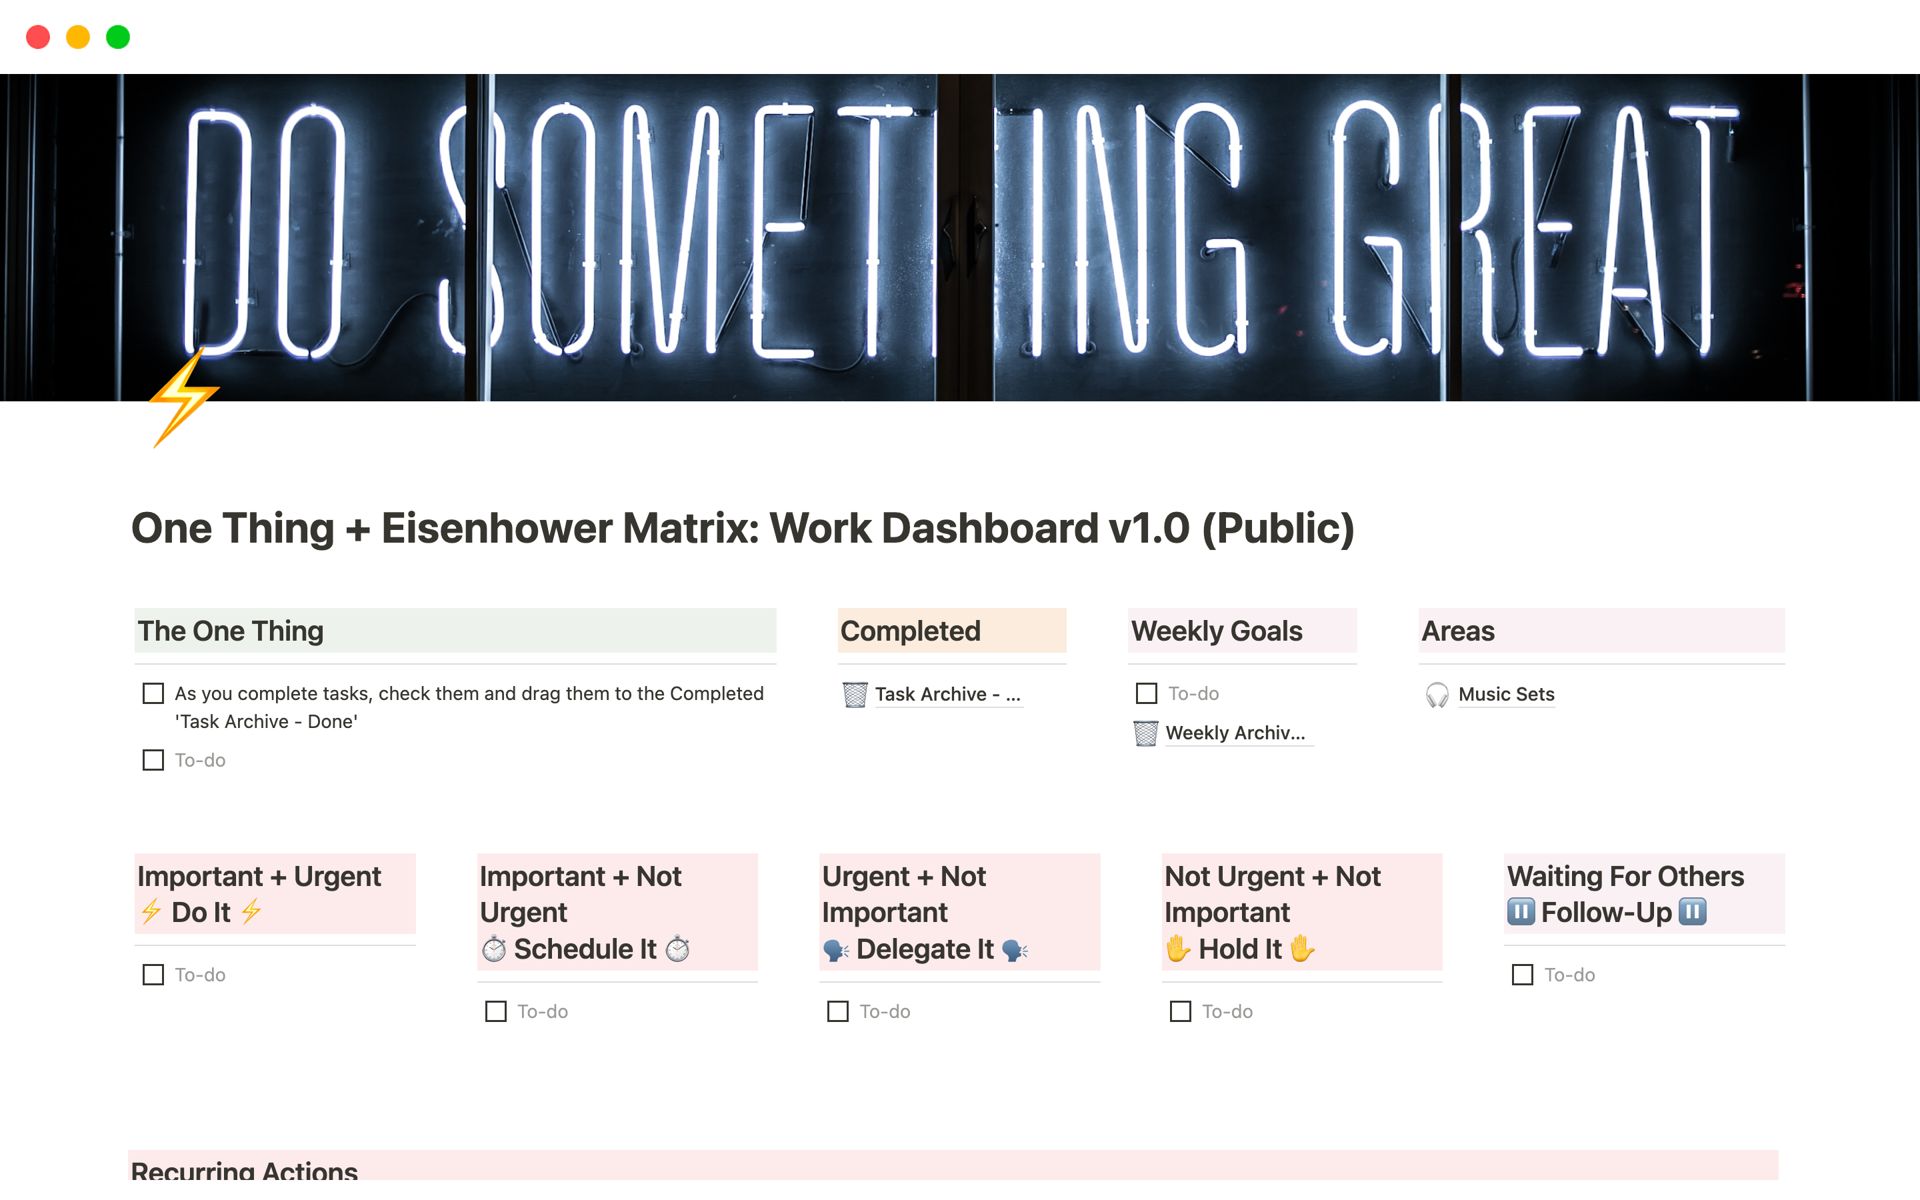 One Thing + Eisenhower Matrix: Work Dashboardのテンプレートのプレビュー